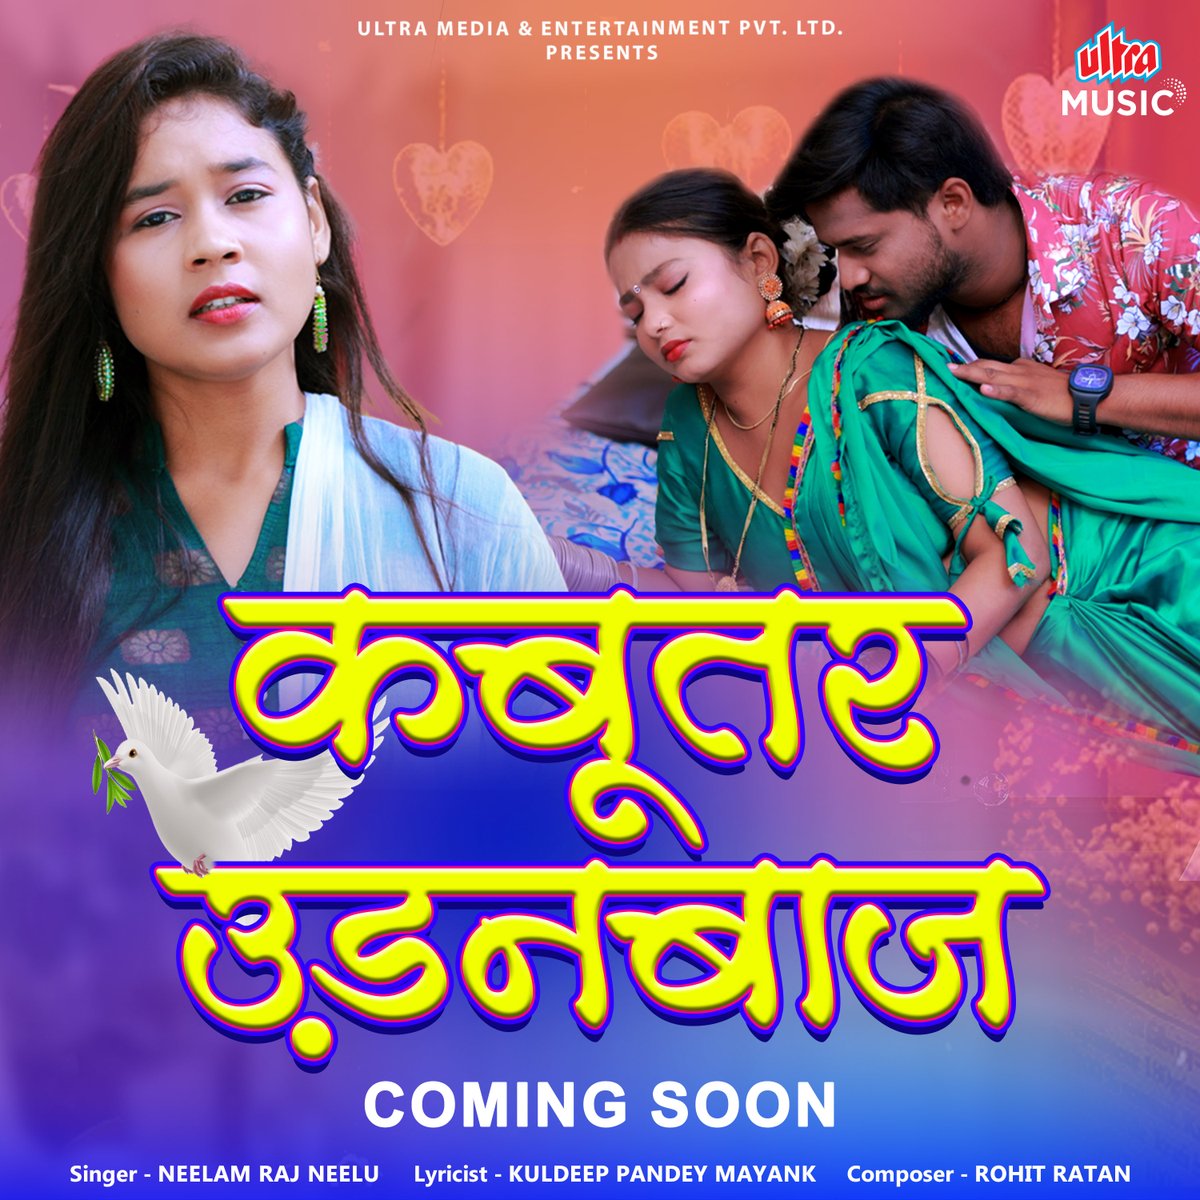 प्यार की मिठास लेकर आ रहे है एक नए गाने में 'कबूतर उड़नबाज' 
जल्द ही Ultra Music Bhojpuri YouTube Channel पर| 
.
#Ultramusicbhojpuri #bhojpurimusic #comingsoon #Bhojpurisong